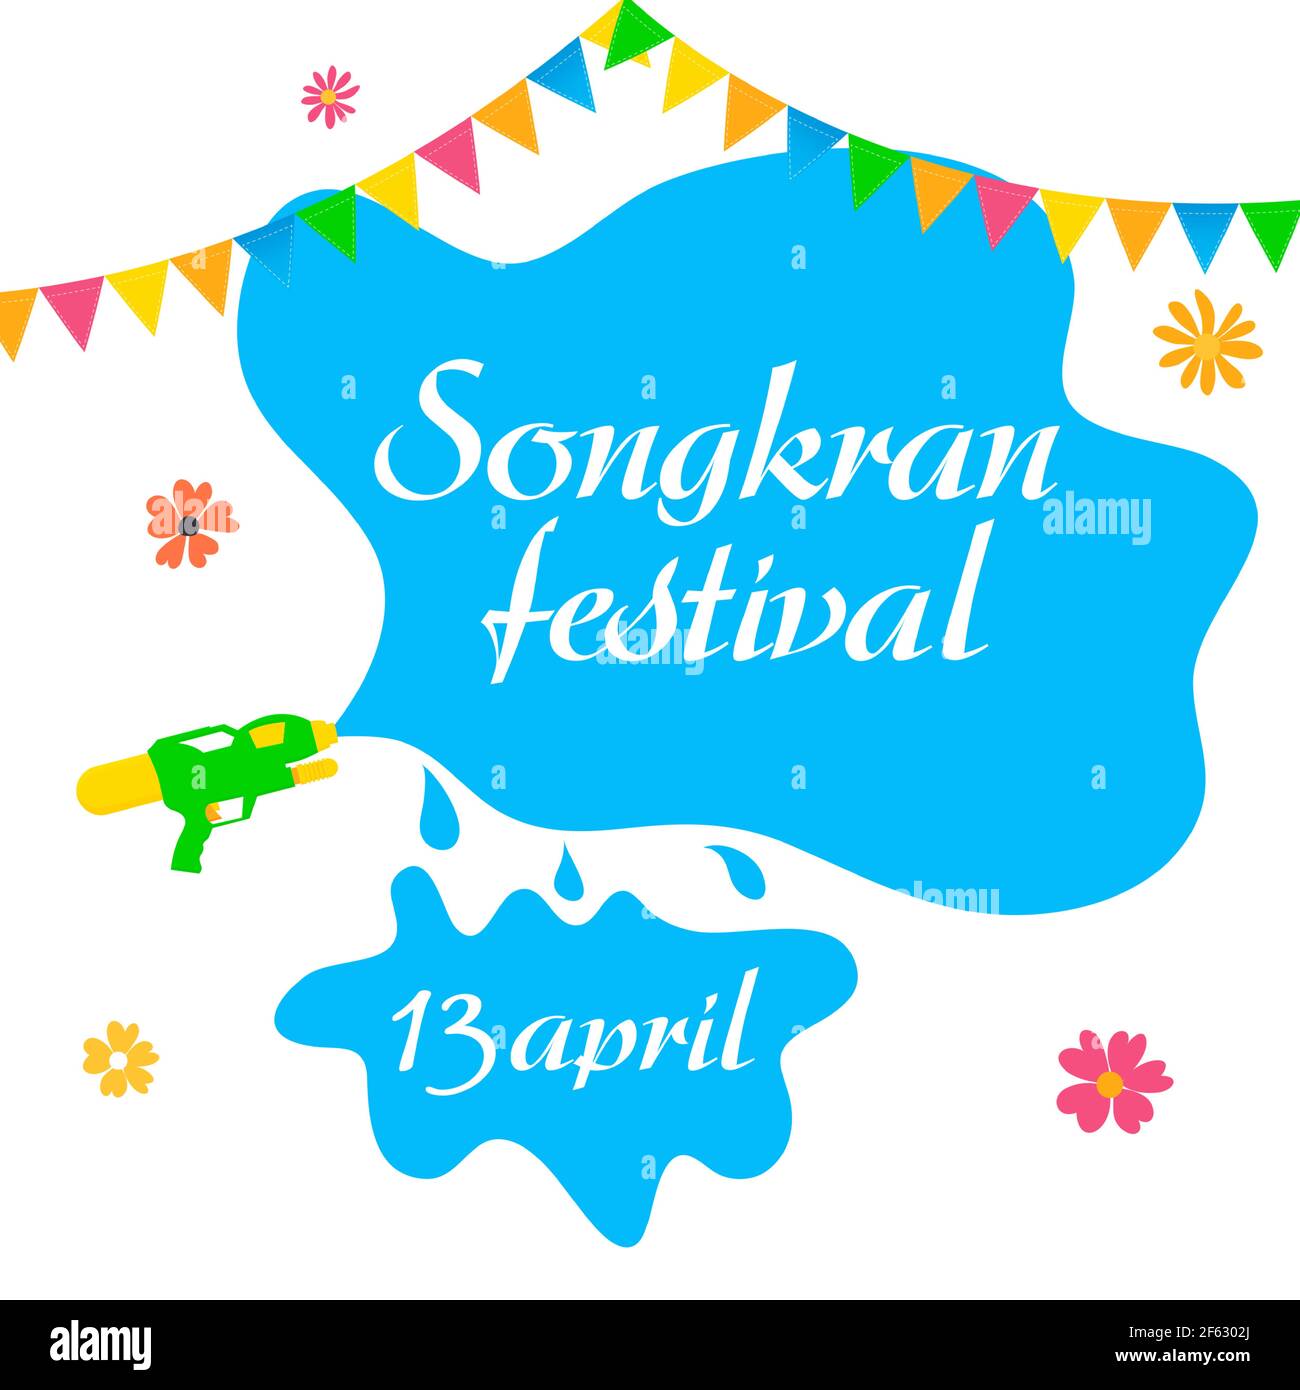 Songkran thailand Wasser Festival Party Banner für Sommer fest. Thailändische Nationalkultur. Vektorgrafik EPS10 Stock Vektor